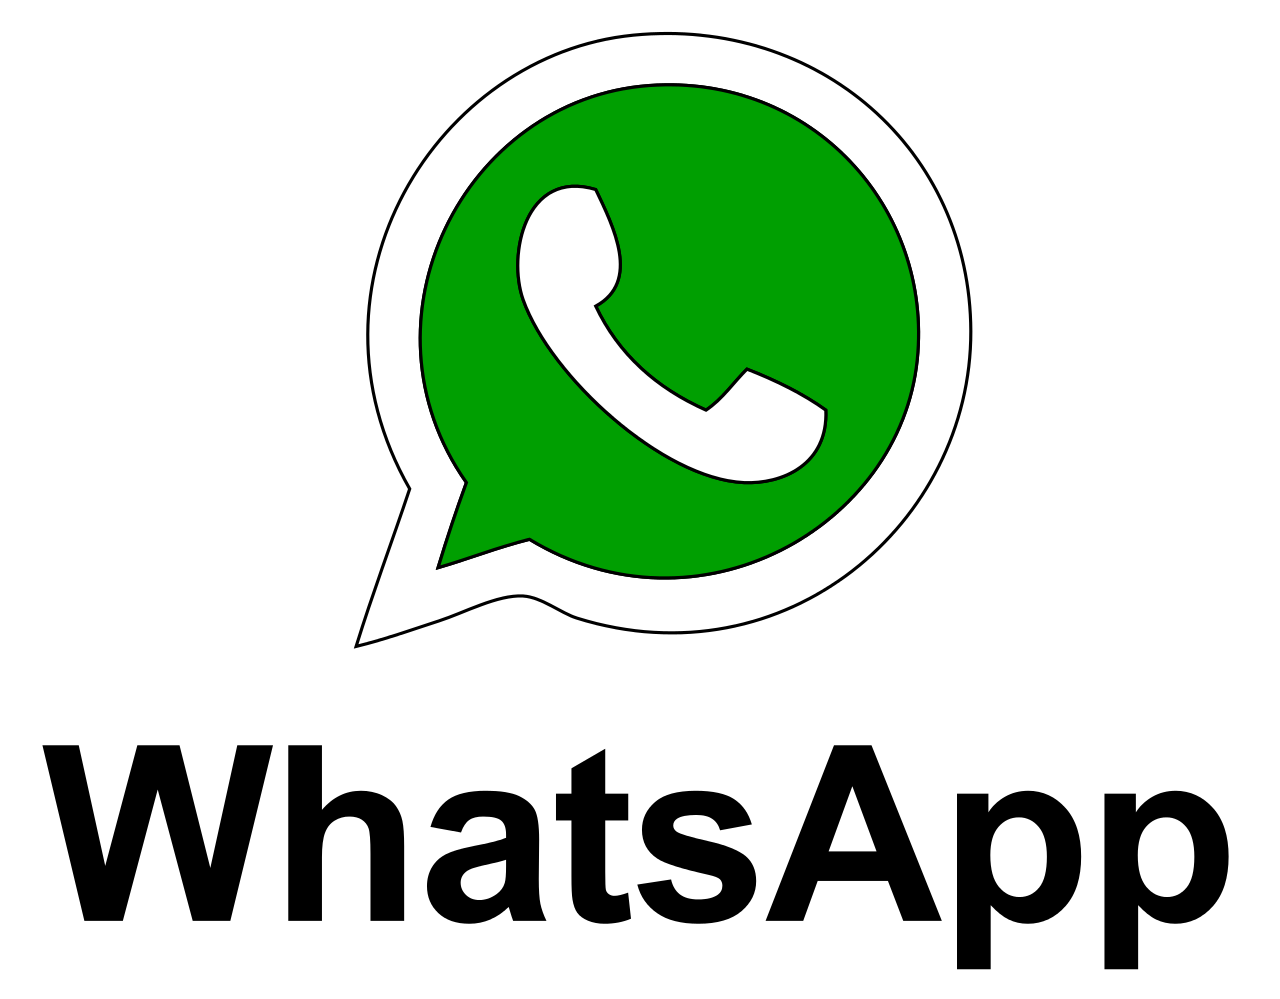 WhatsApp capodanno